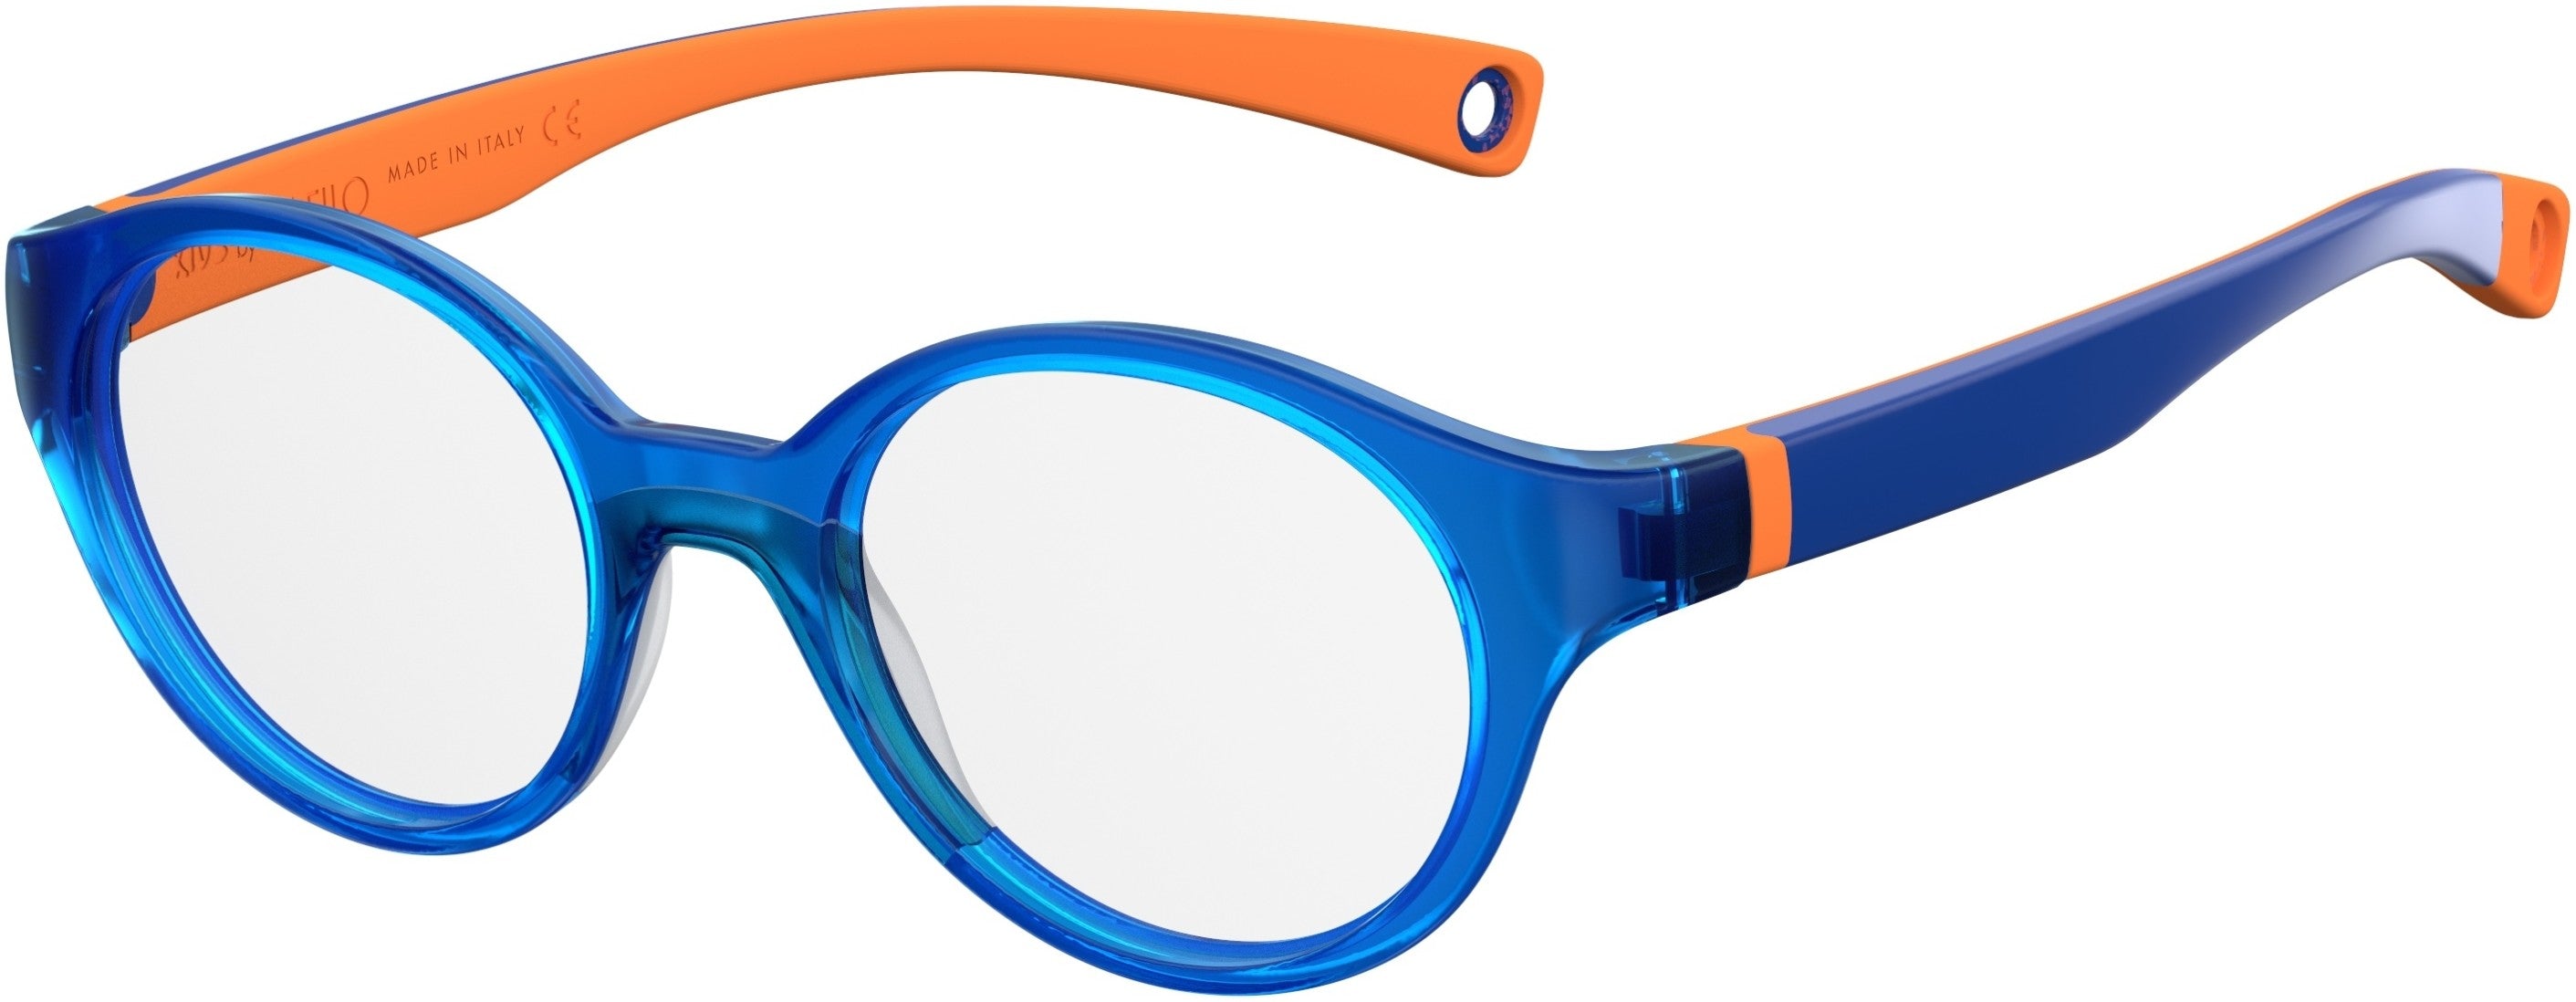 Safilo Safilo Kids Safilo 0008 Tea Cup Eyeglasses 0LWS-0LWS  Blue Orange (00 Demo Lens)